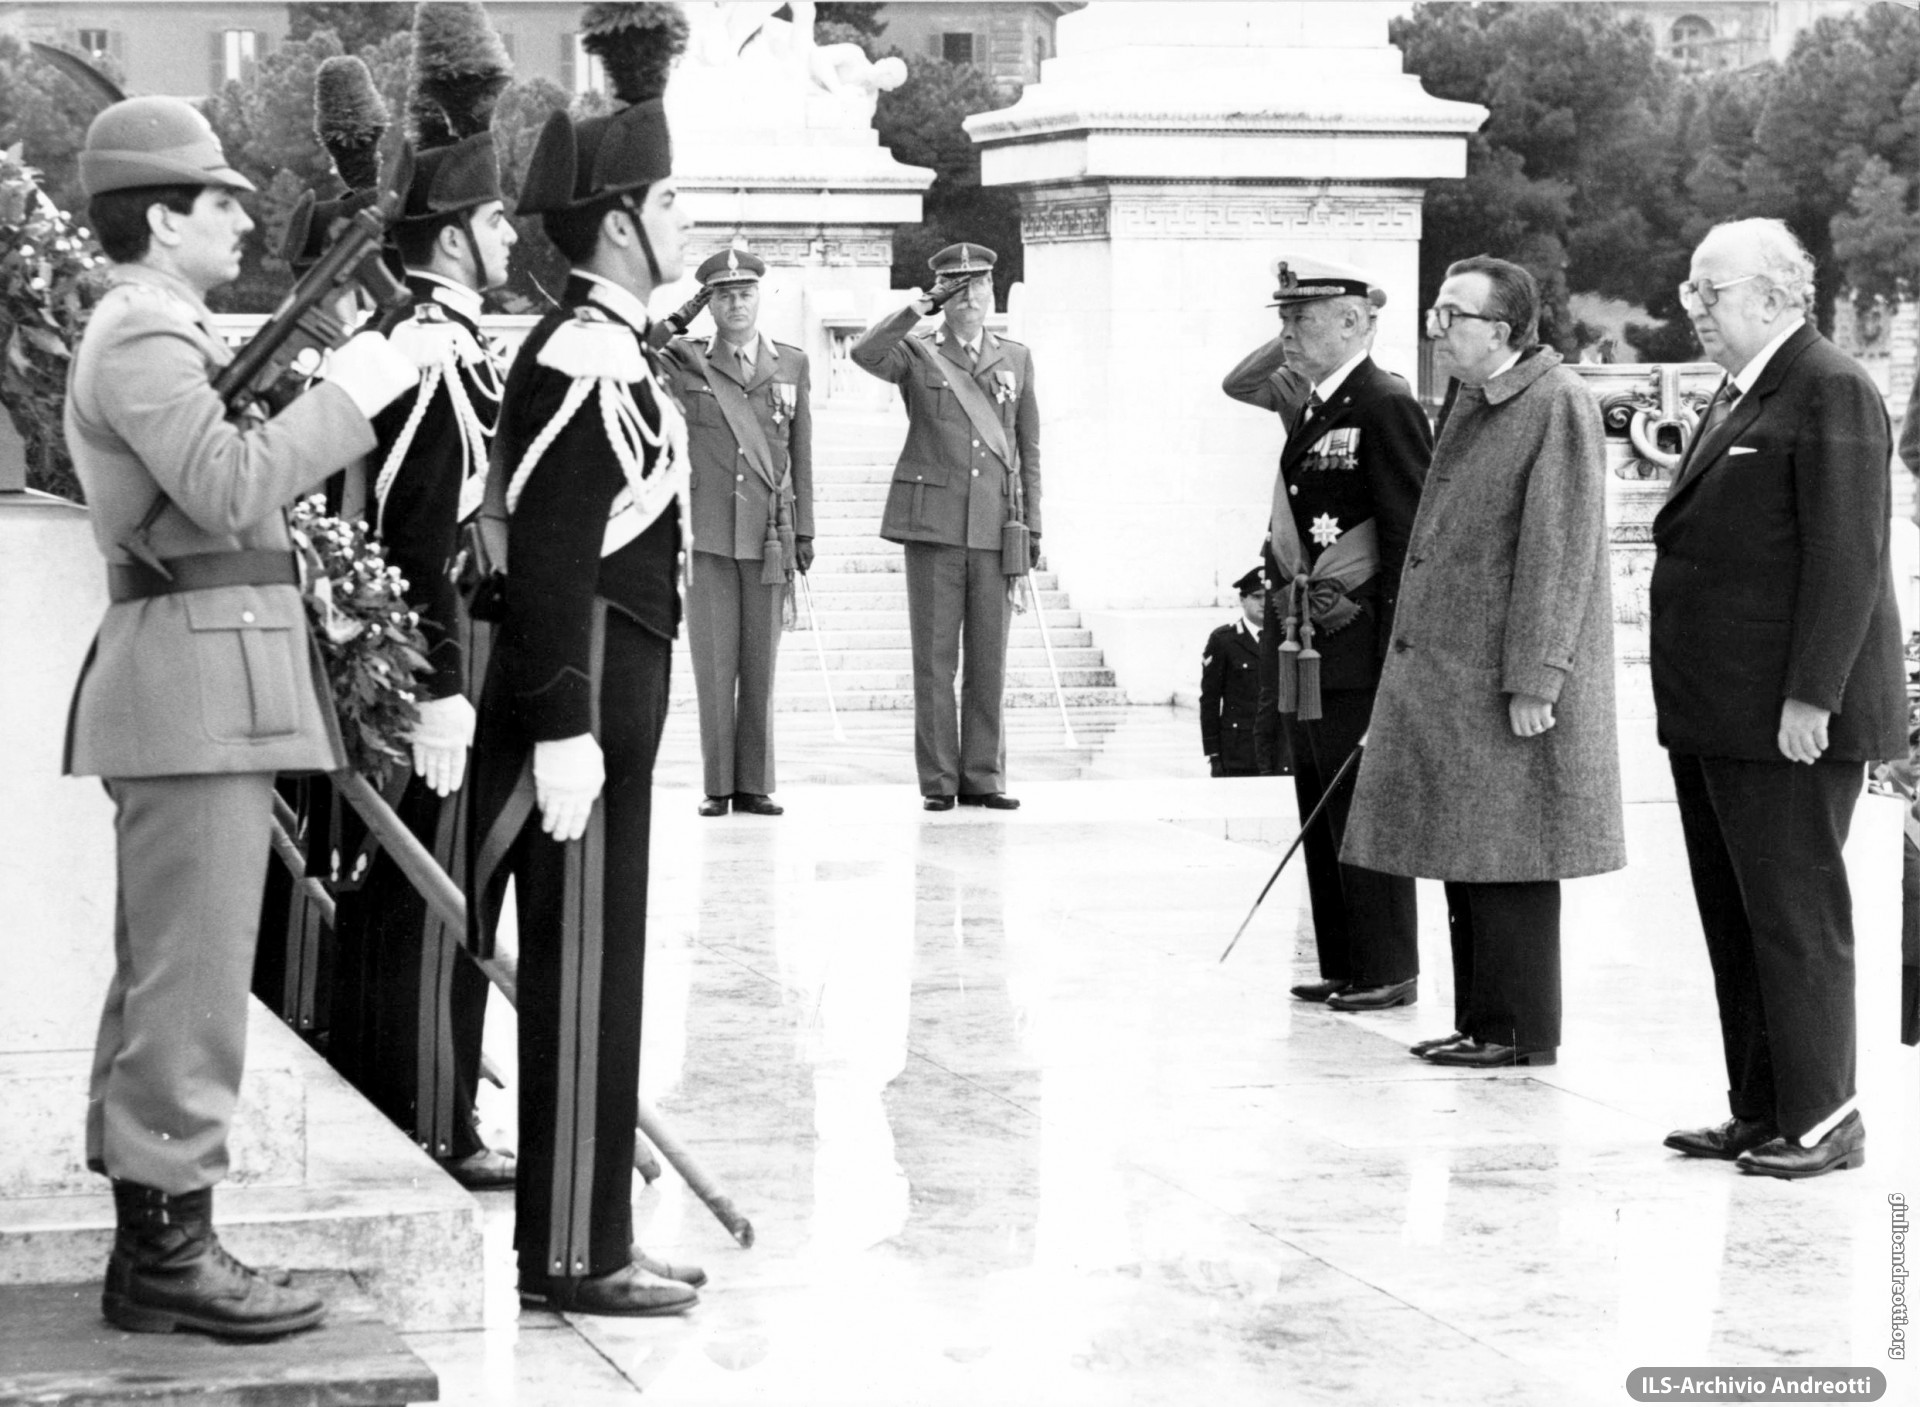 9 maggio 1985. Cerimonia all’Altare della Patria nel Quarantennale del ritorno della pace in Europa. Il Ministro degli Esteri Andreotti insieme con il Ministro della Difesa Spadolini.